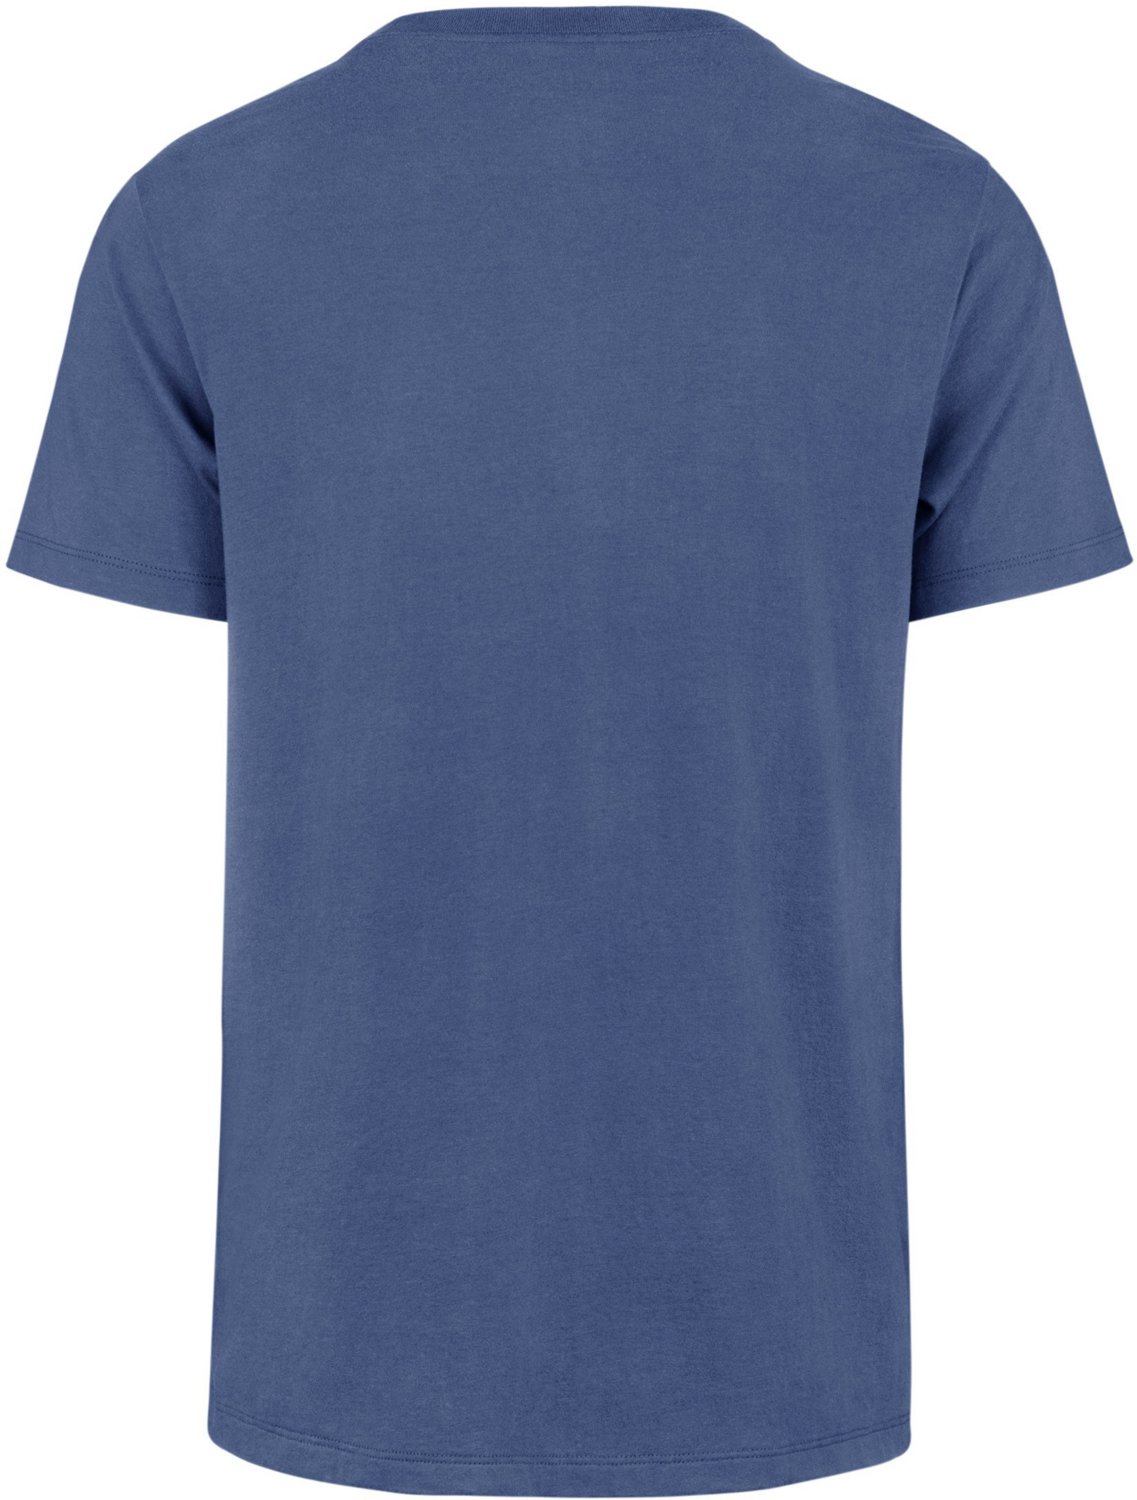 Nike Men's Texas Rangers Green Co-op Short Sleeve T-Shirt